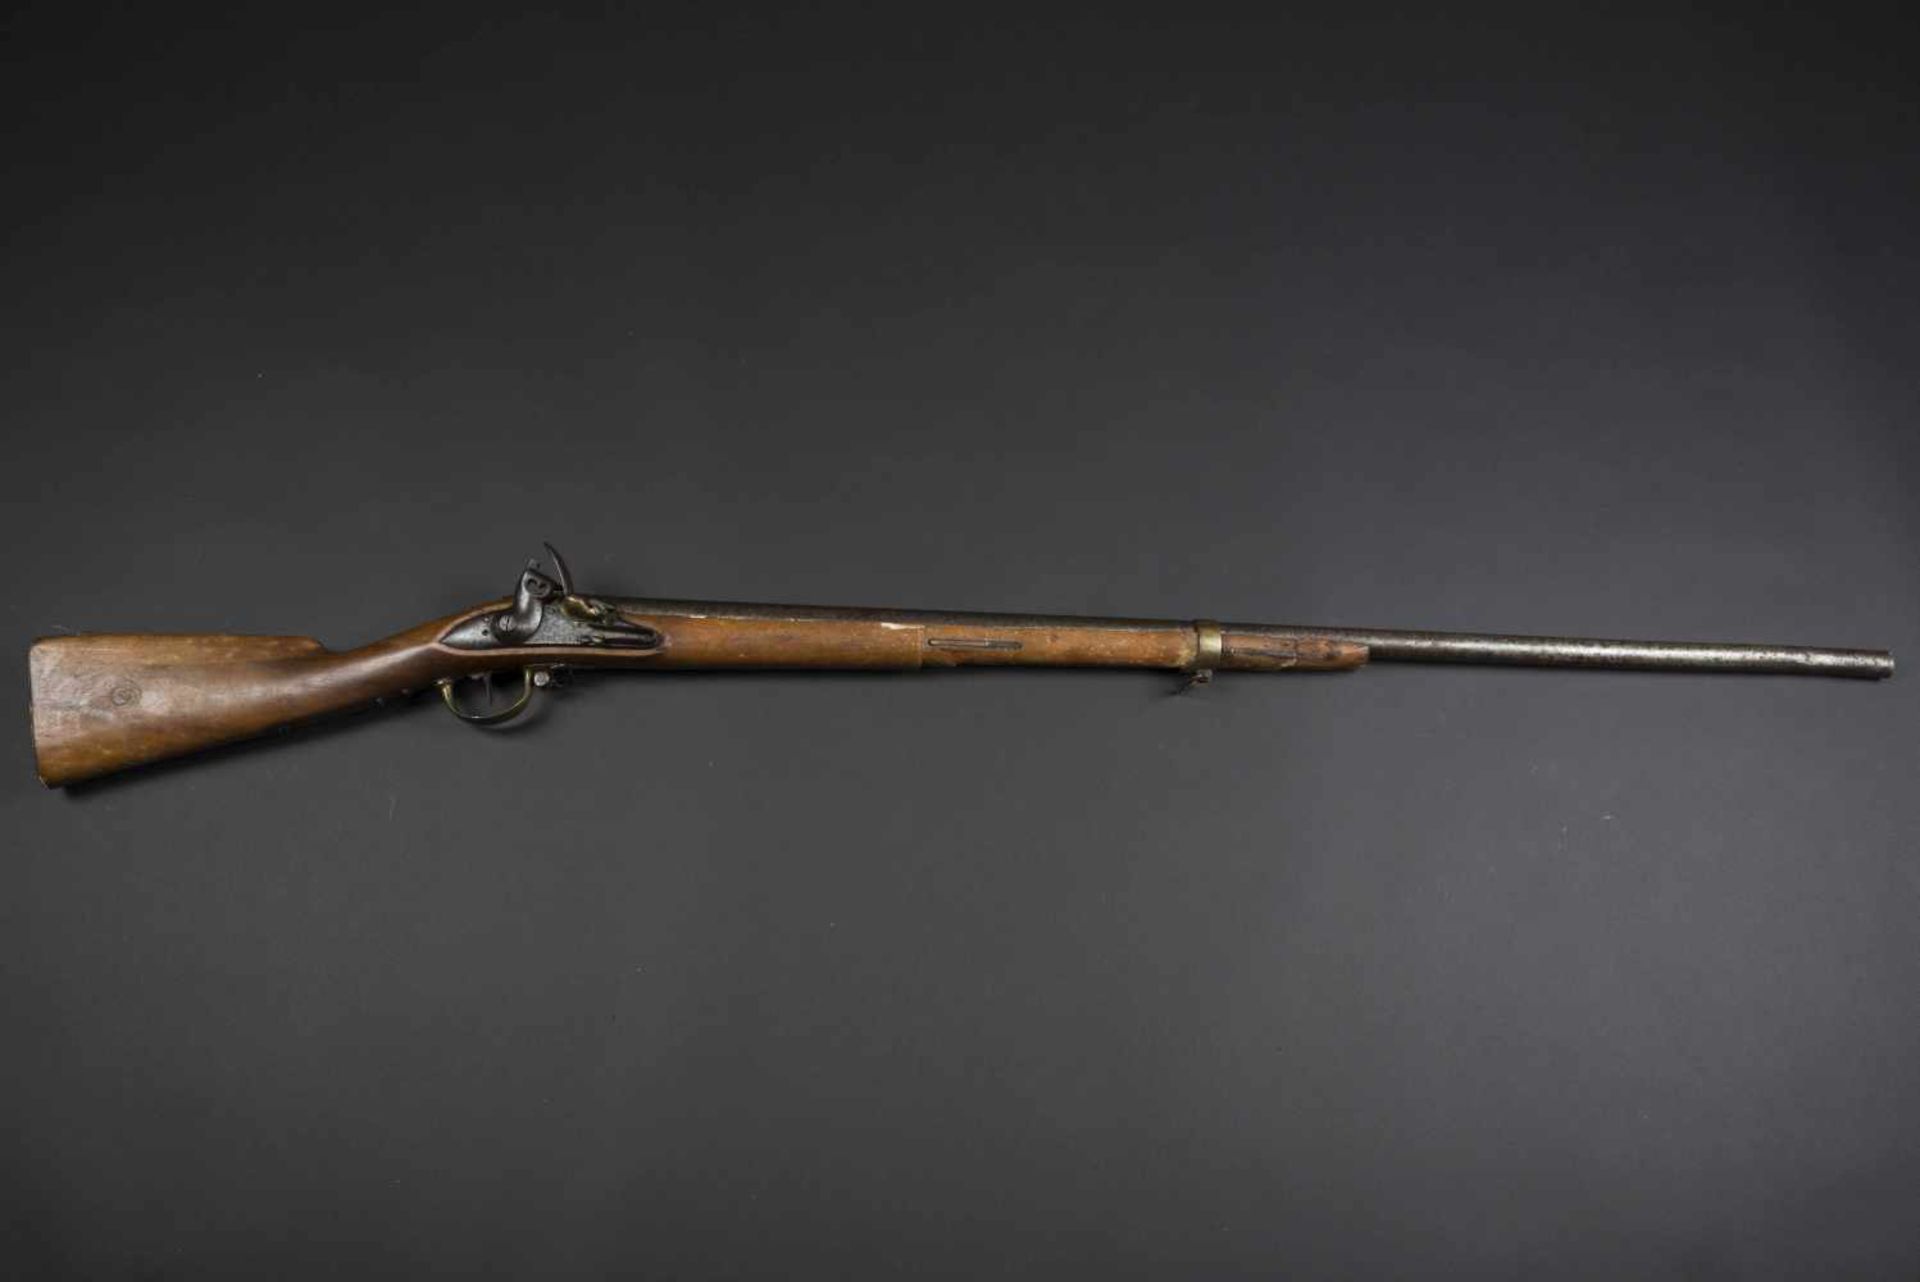 Fusil 1814 catégorie D Crosse en bois, parties métalliques présentes, dont certaines sont en laiton.